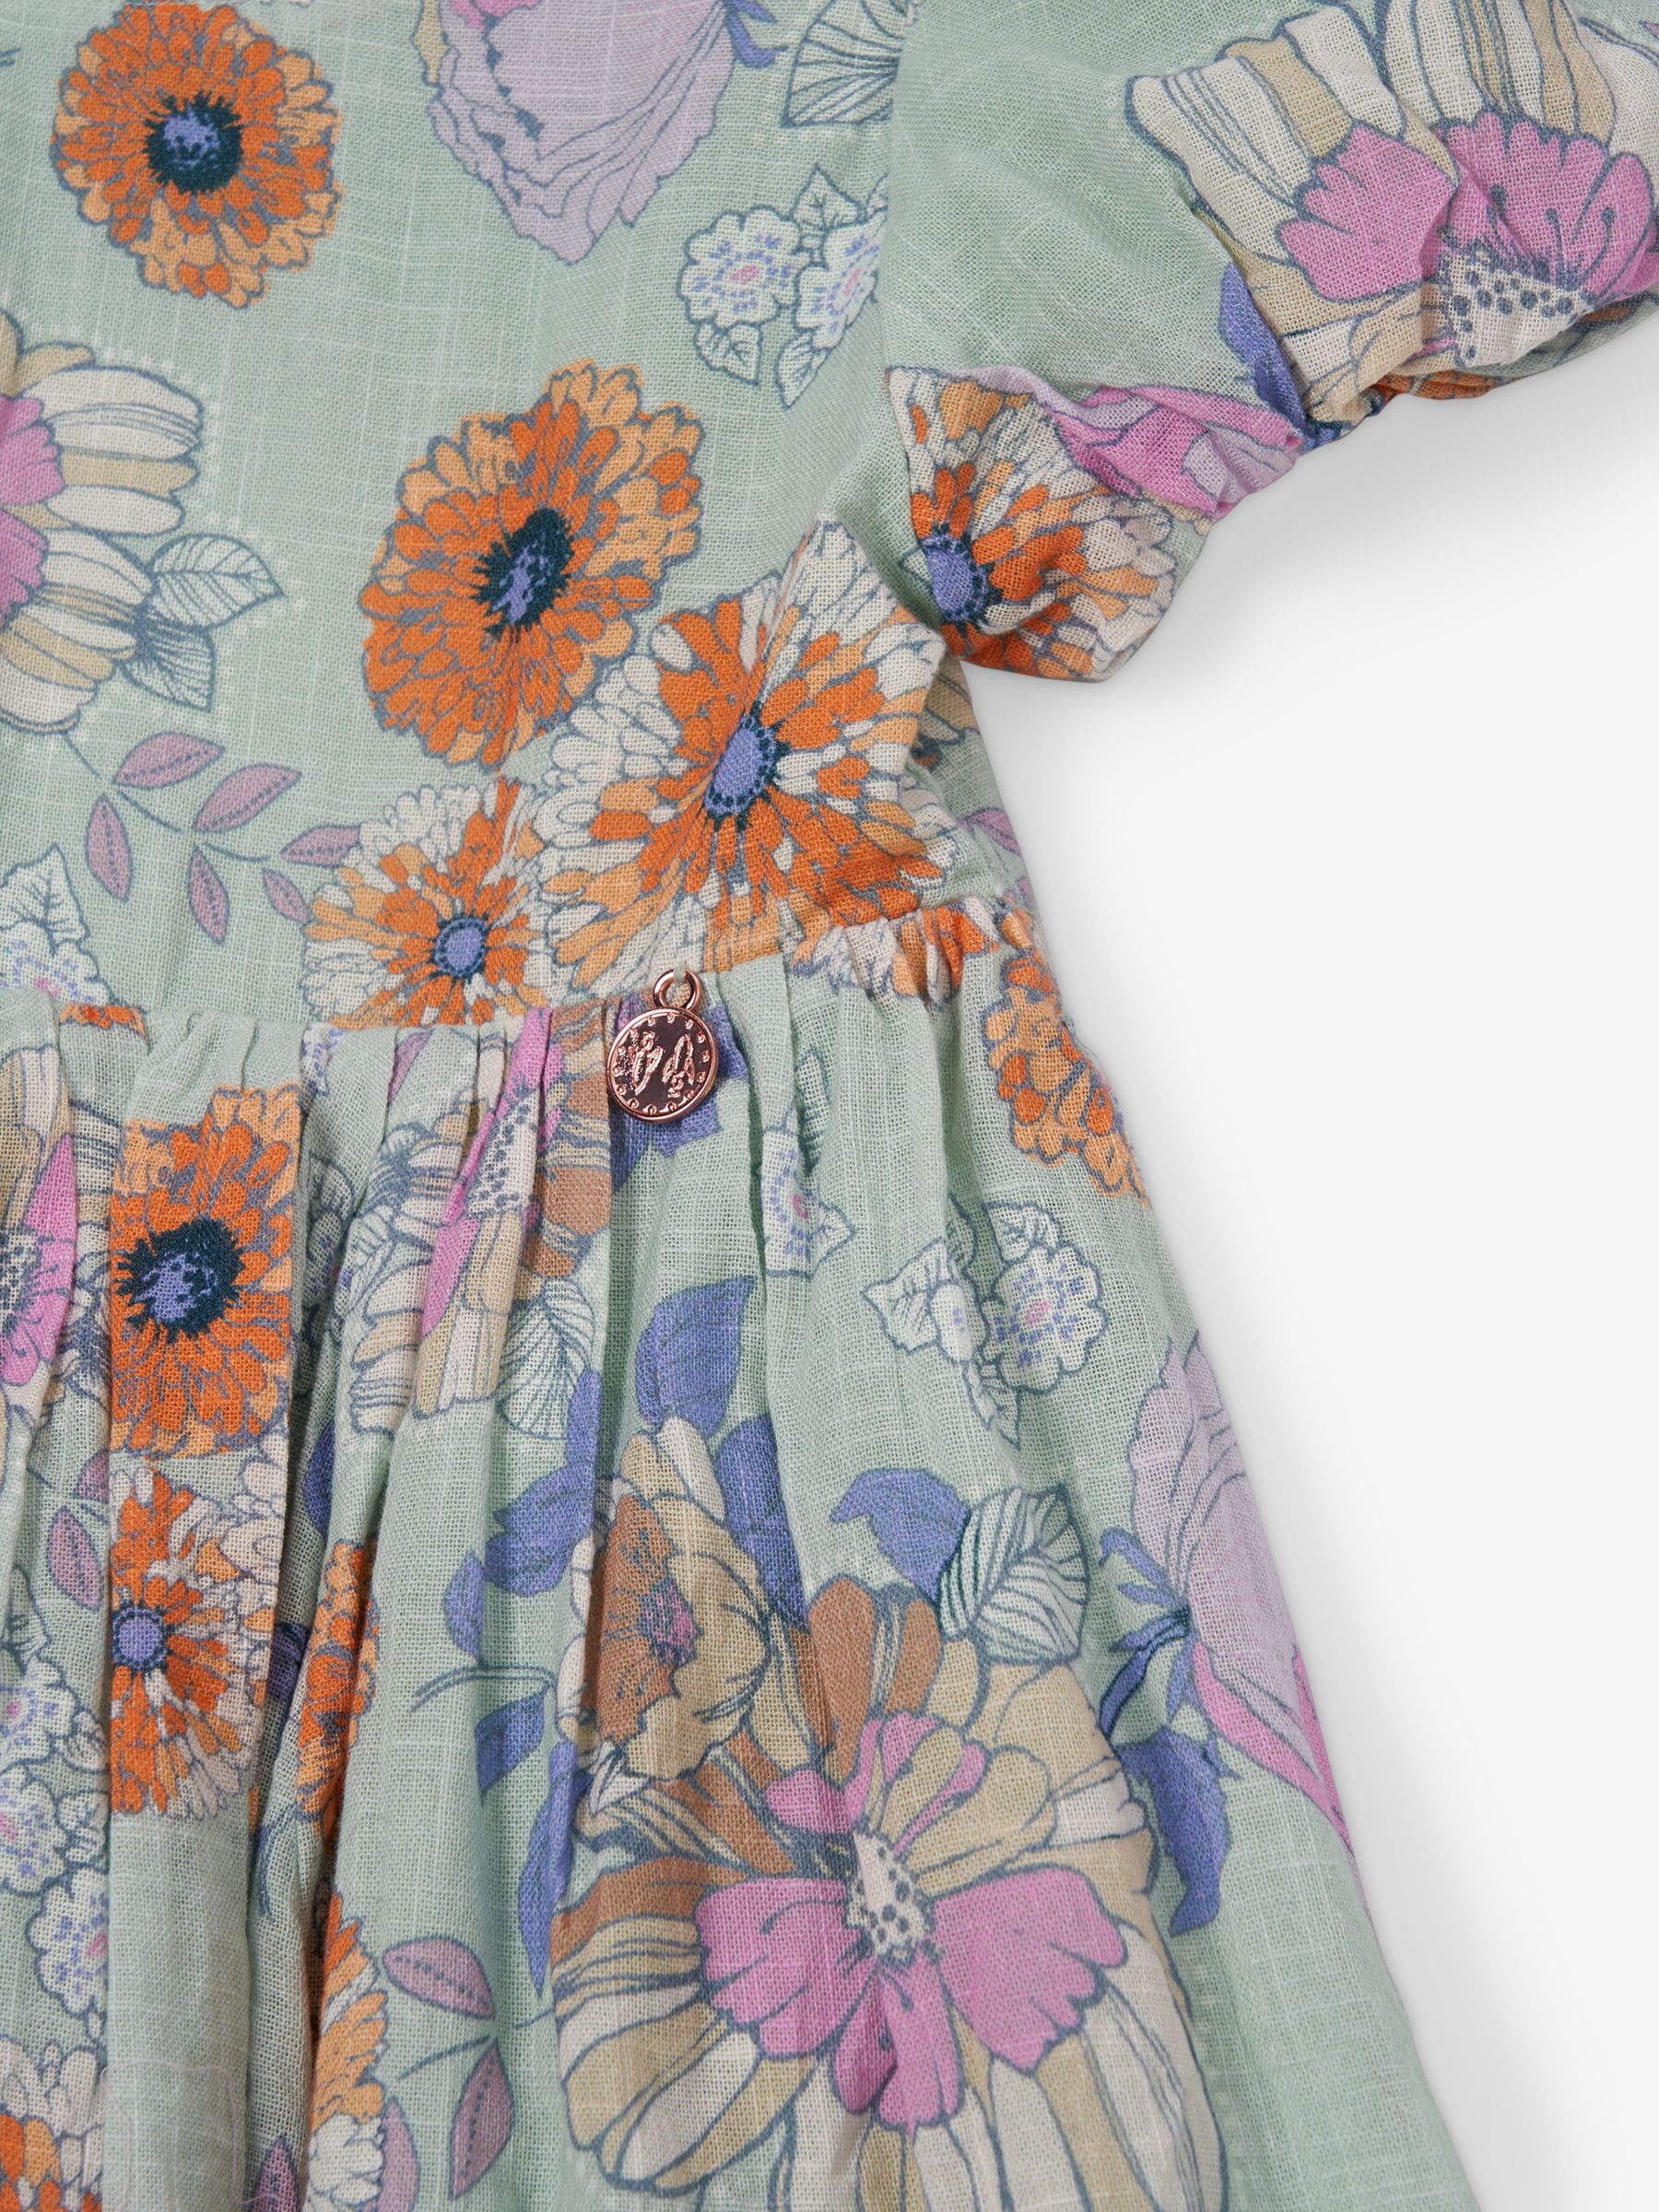 Buy Angel & Rocket Kids' Floral Print Tie Back Dress, Sage Online at johnlewis.com